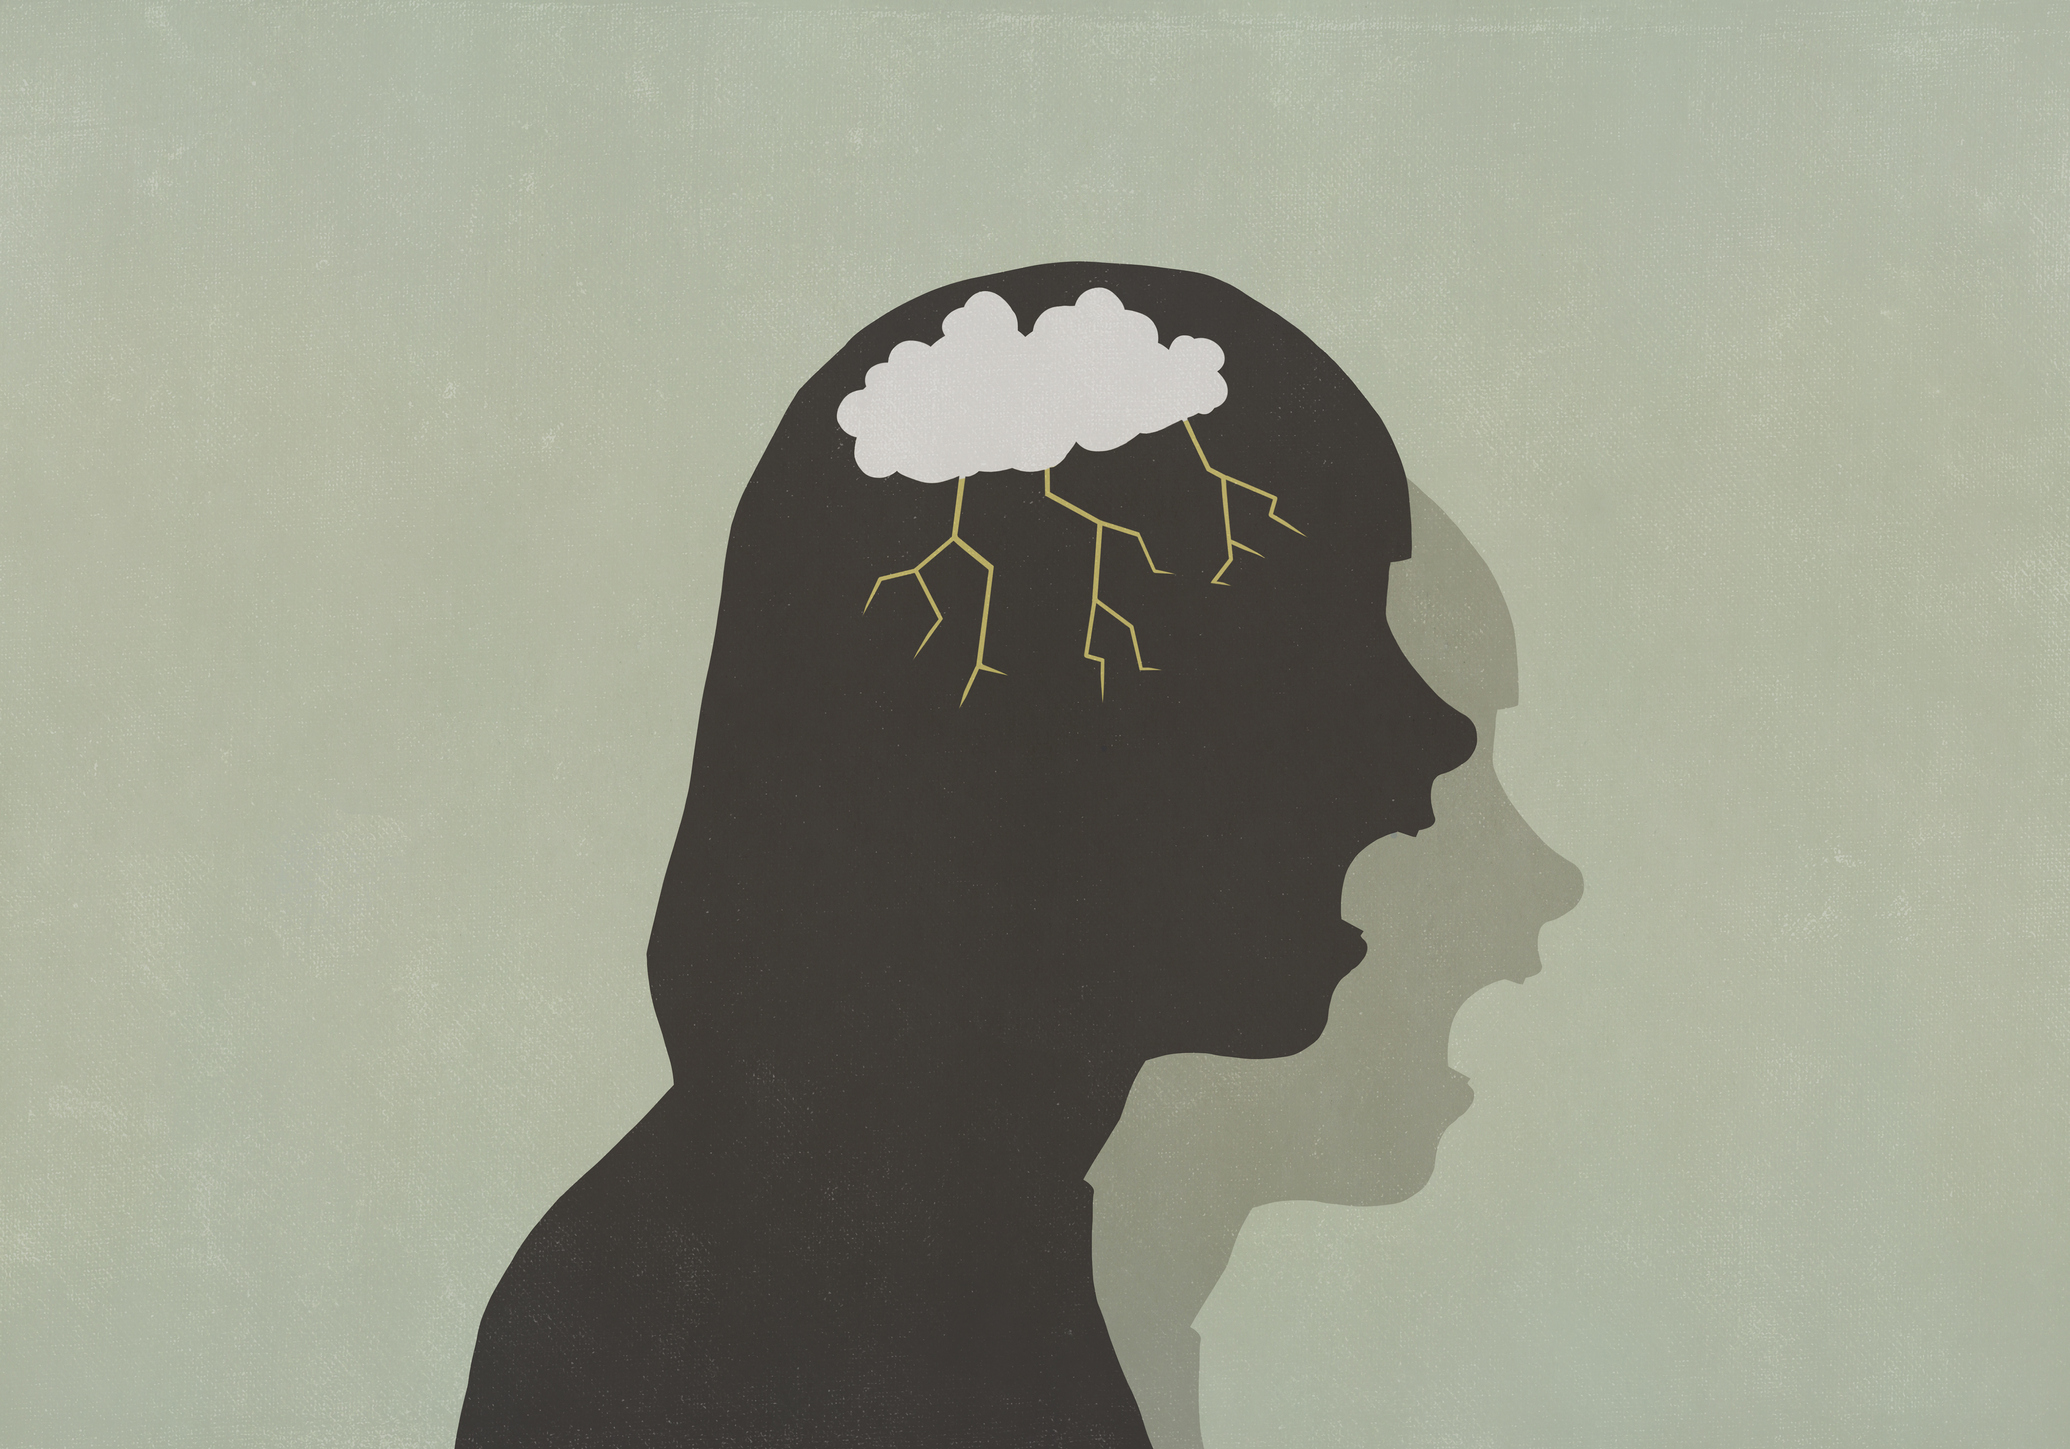 Ilustración de una silueta con un cerebro con una nube y tormenta. 